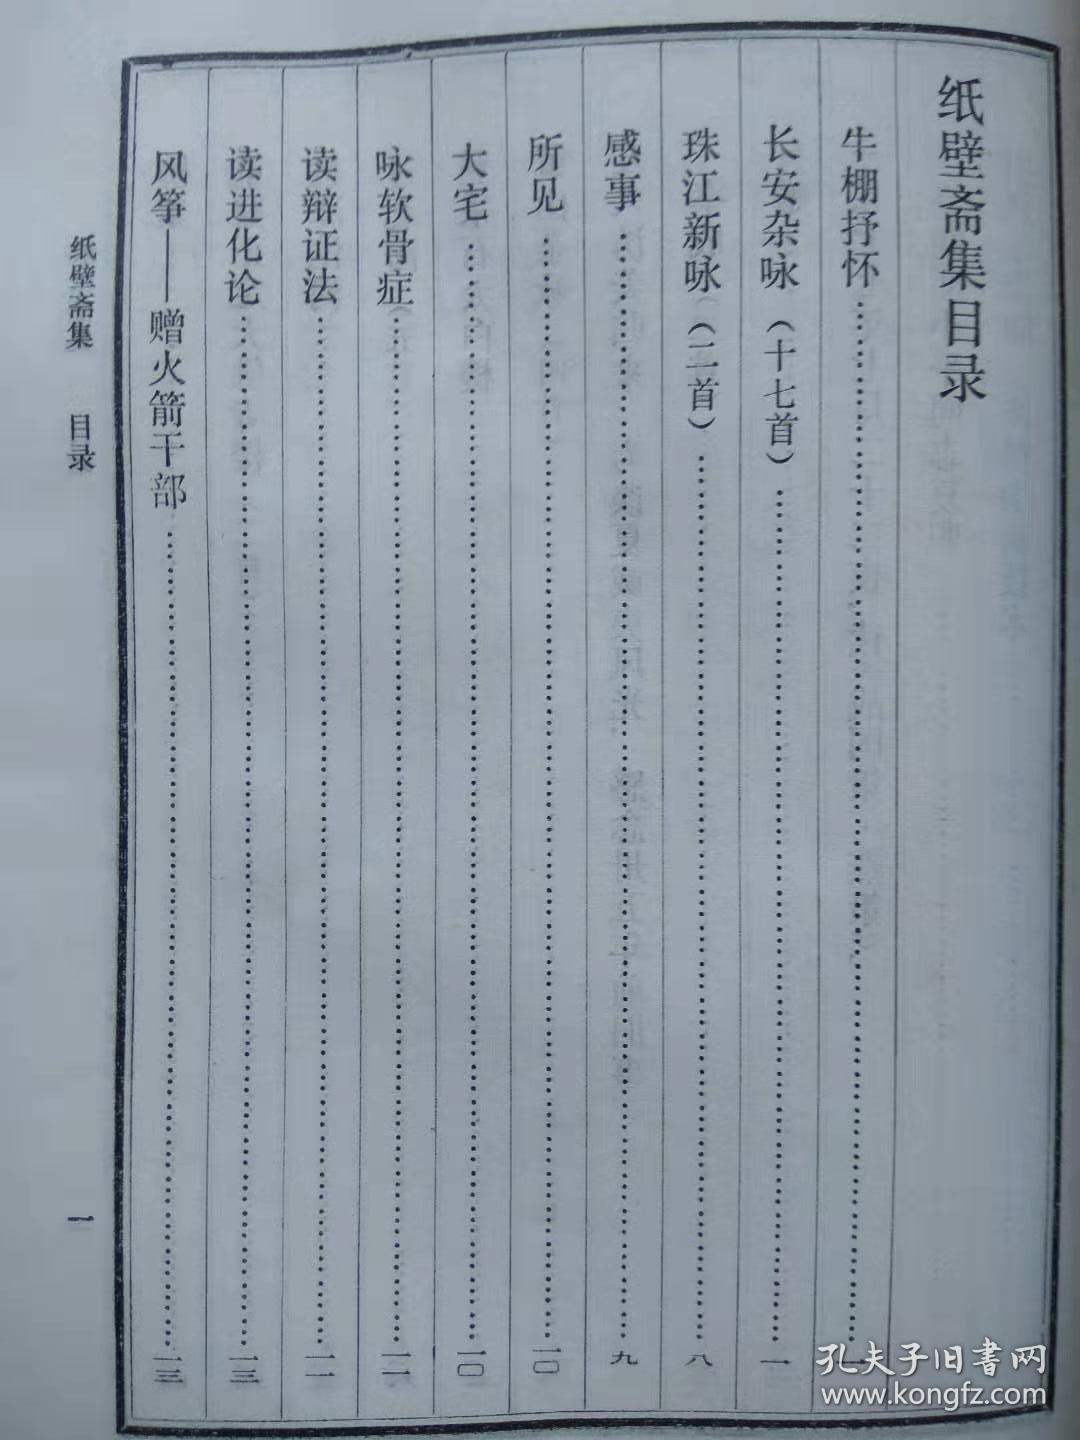 纸壁斋集--荒芜著 俞平伯题签。黑龙江人民出版社。1981年。1版1印。竖排简体字